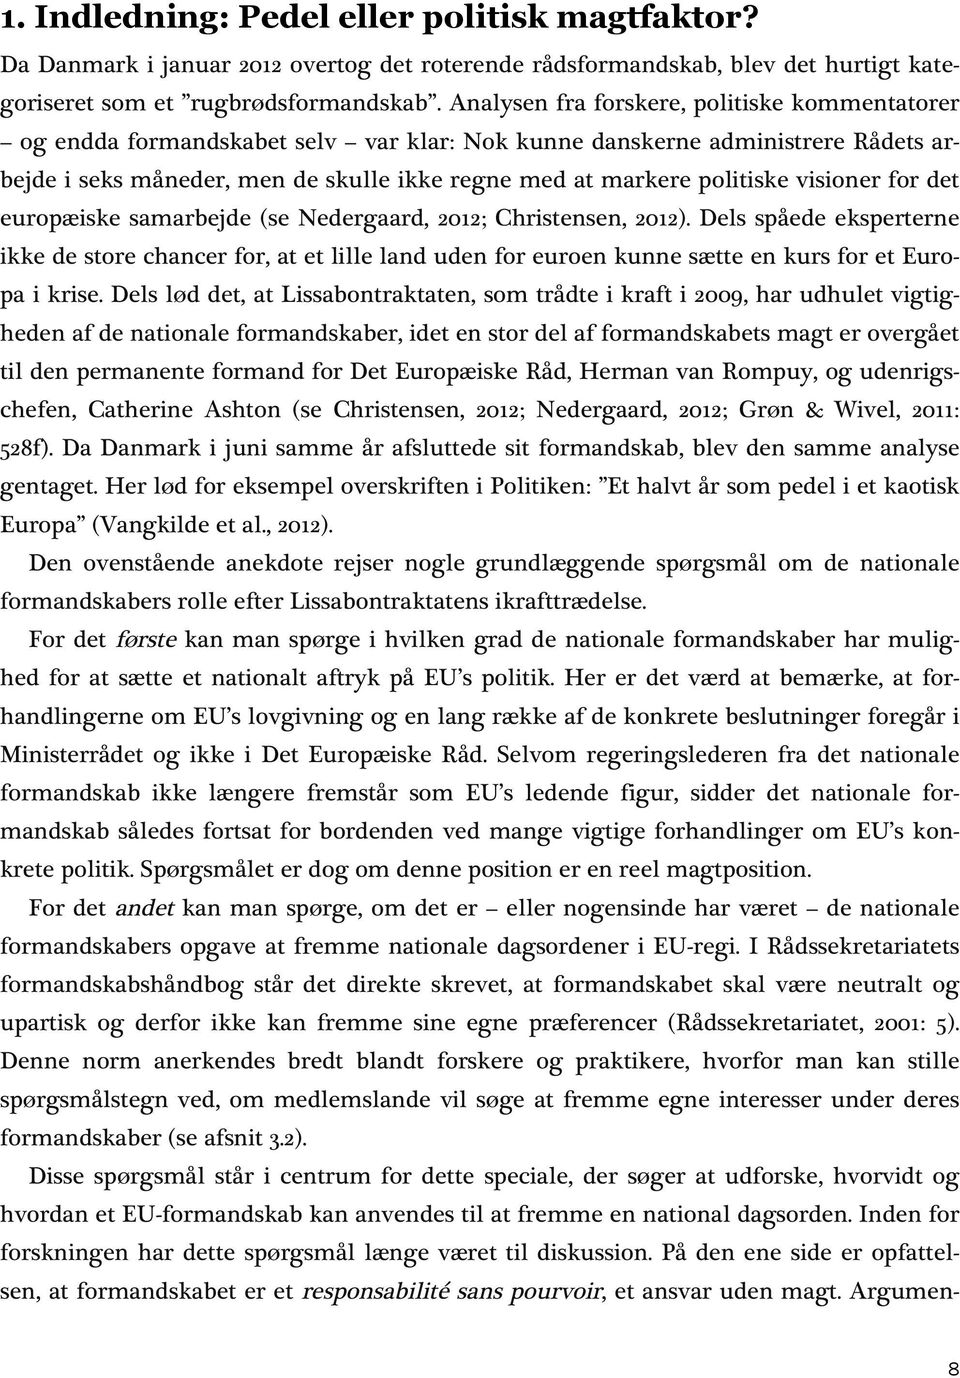 visioner for det europæiske samarbejde (se Nedergaard, 2012; Christensen, 2012).